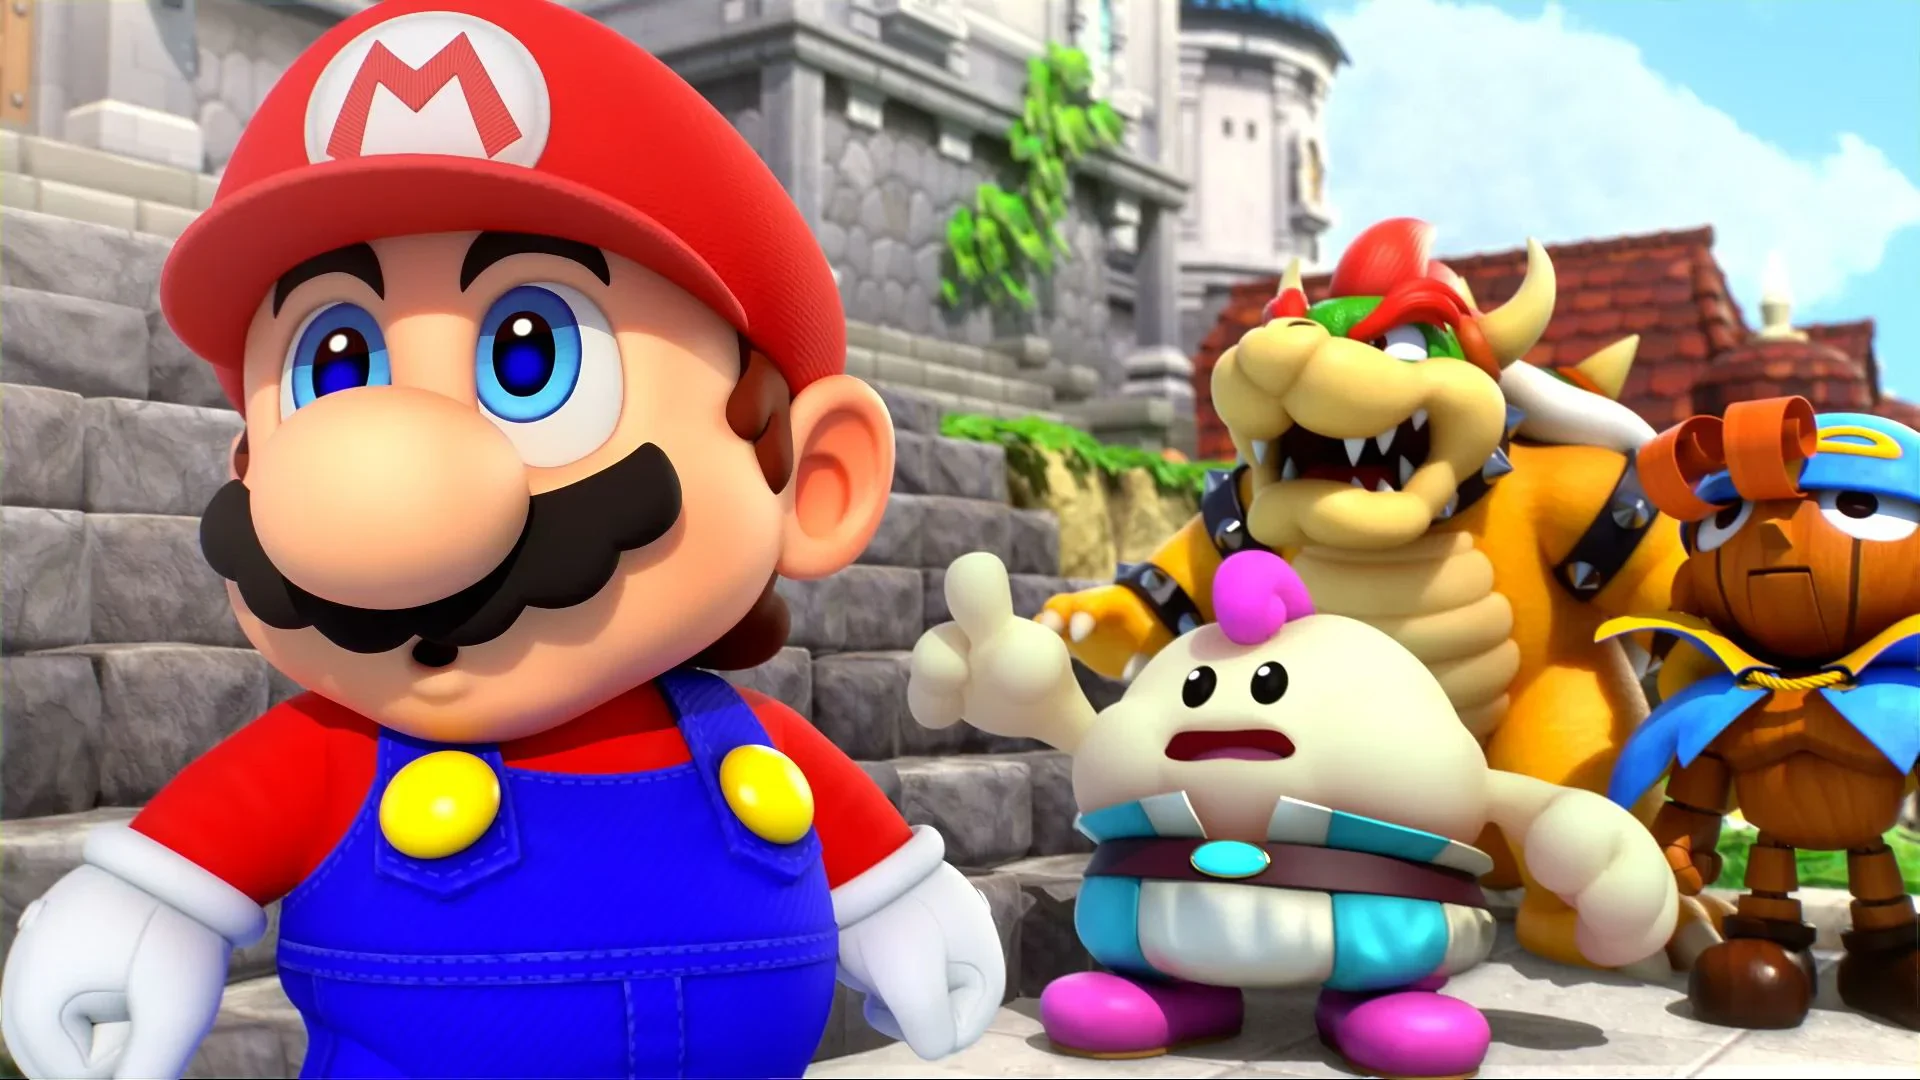 Super Mario RPG – recenzja gry. Przygoda w Grzybowym Królestwie